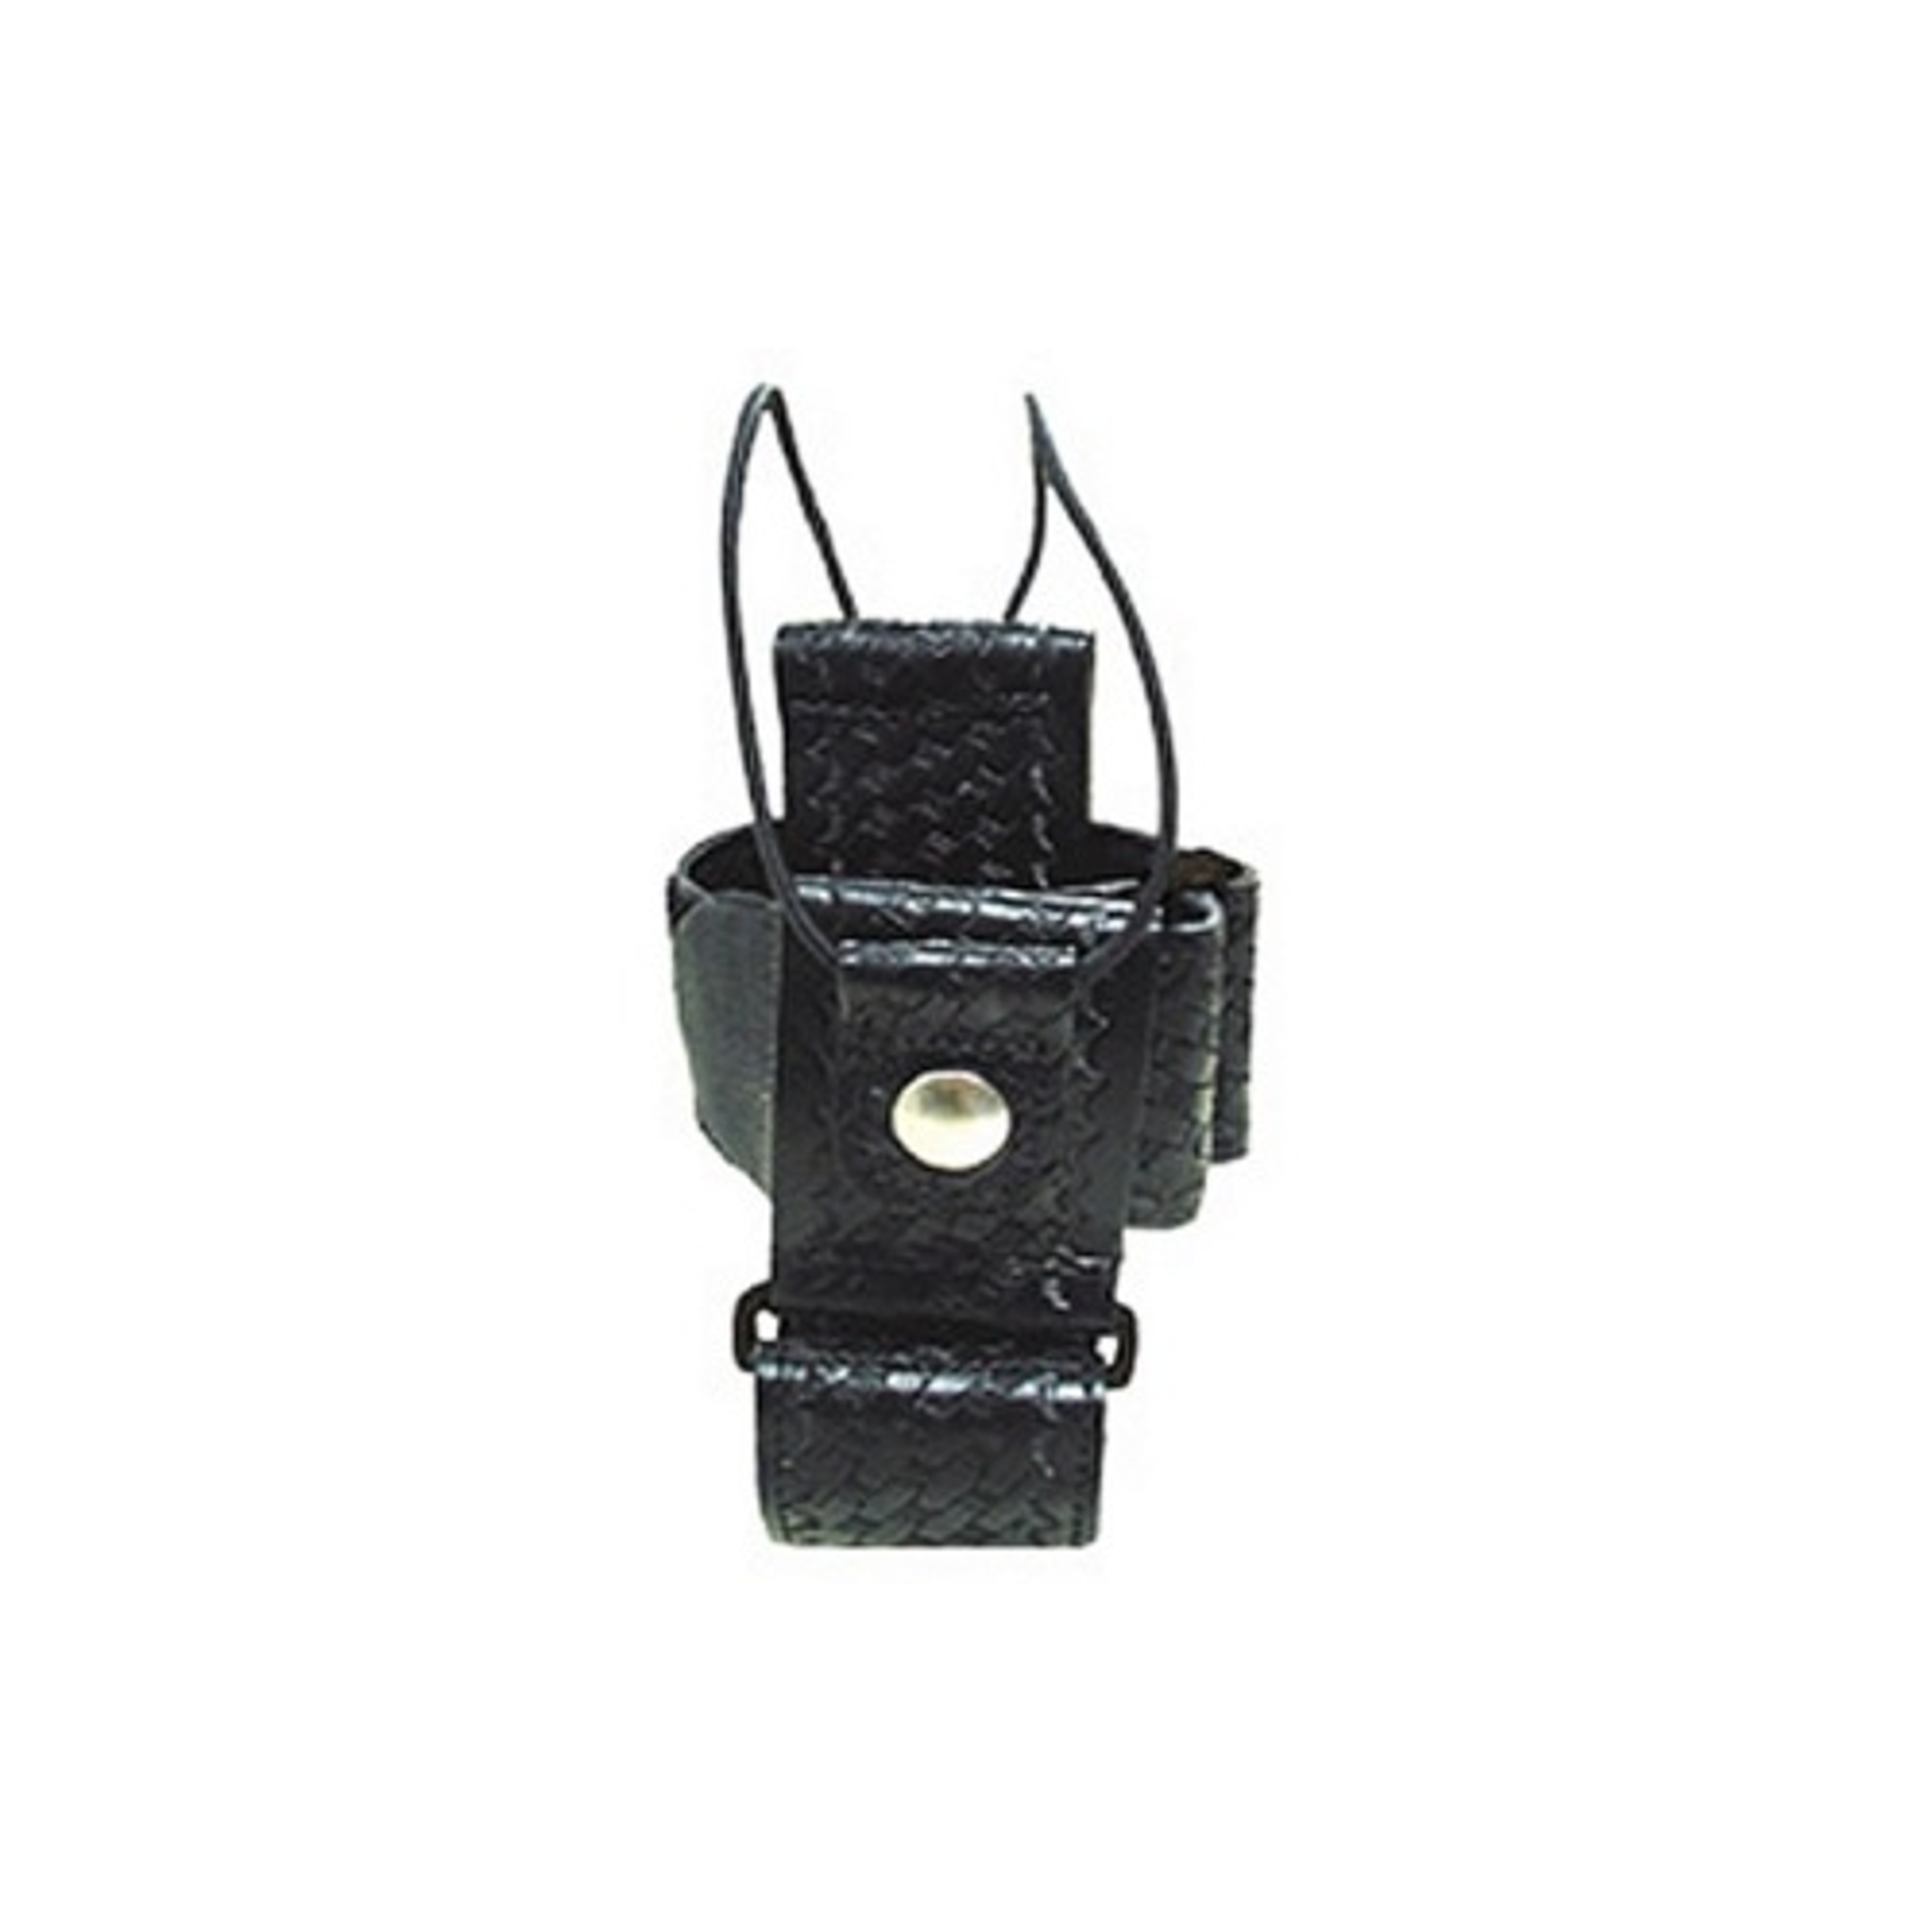 Adjustable Radio Holder - KR5610-3